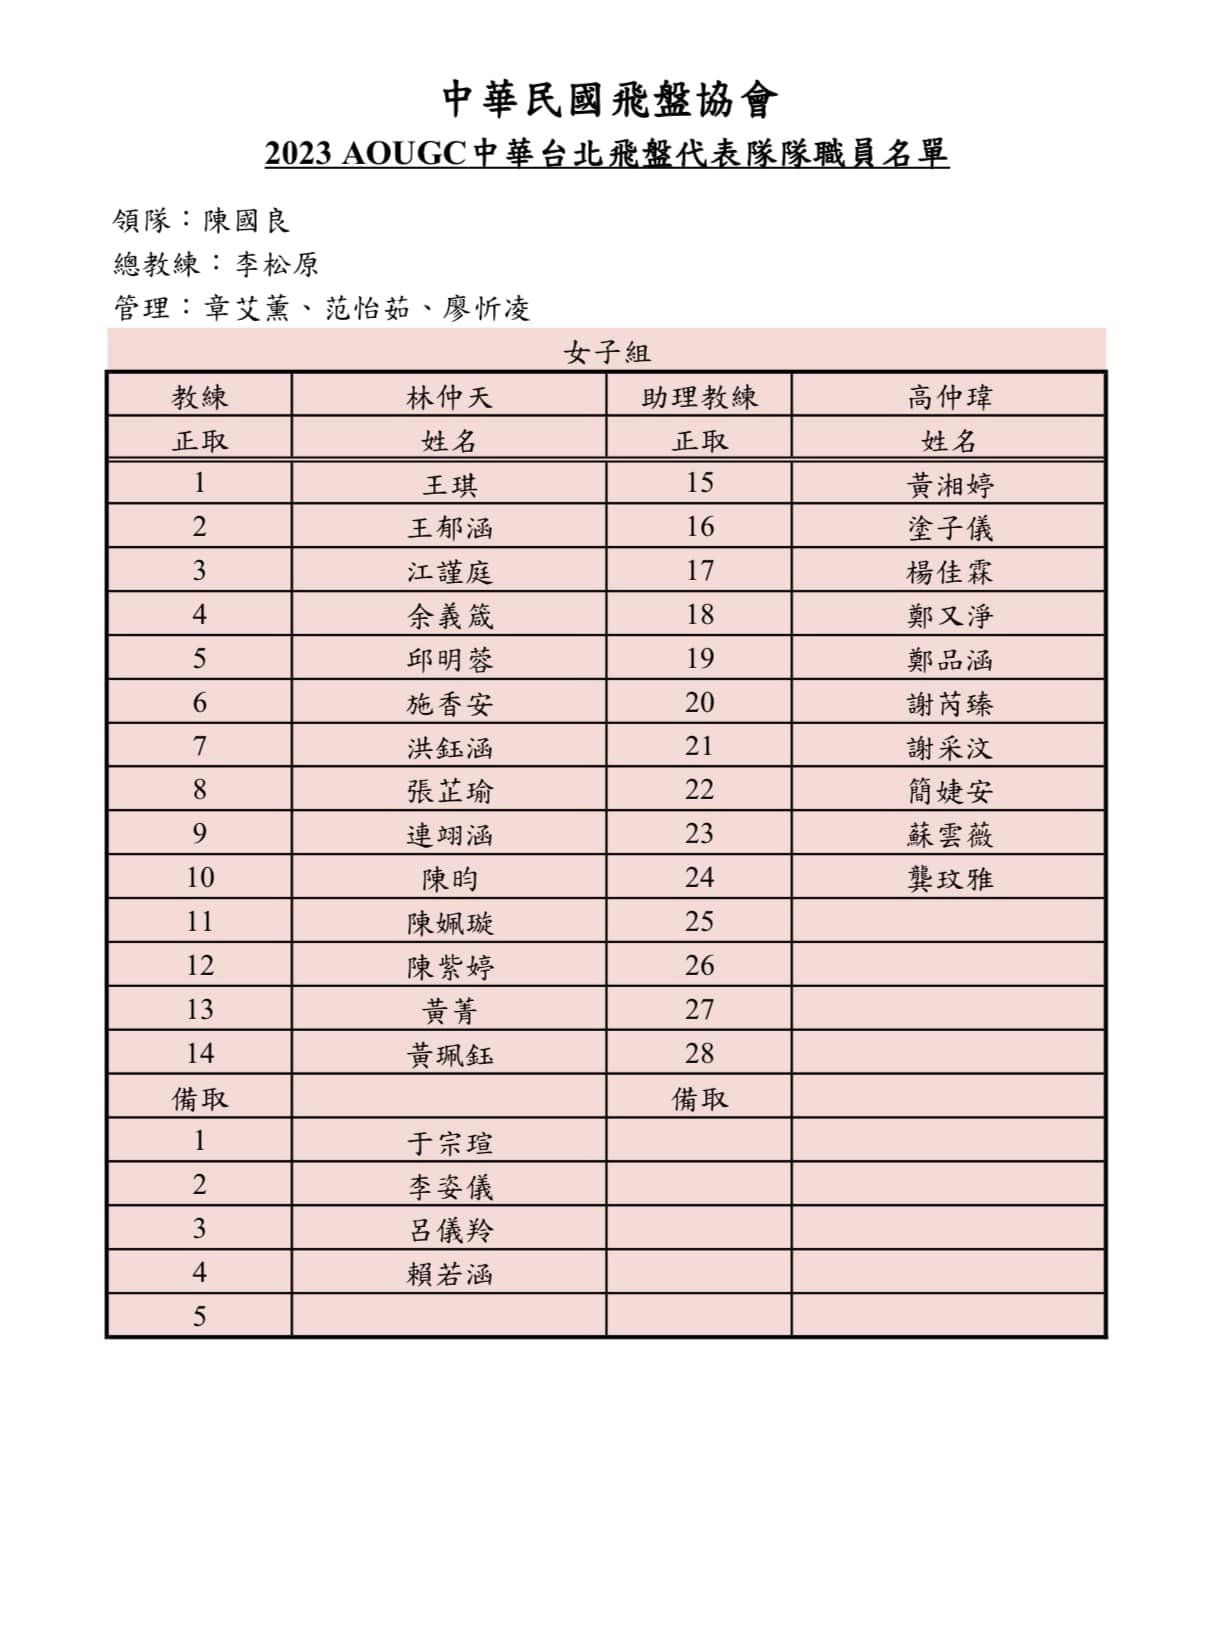 2023 AOUGC中華台北飛盤代表隊隊職員名單